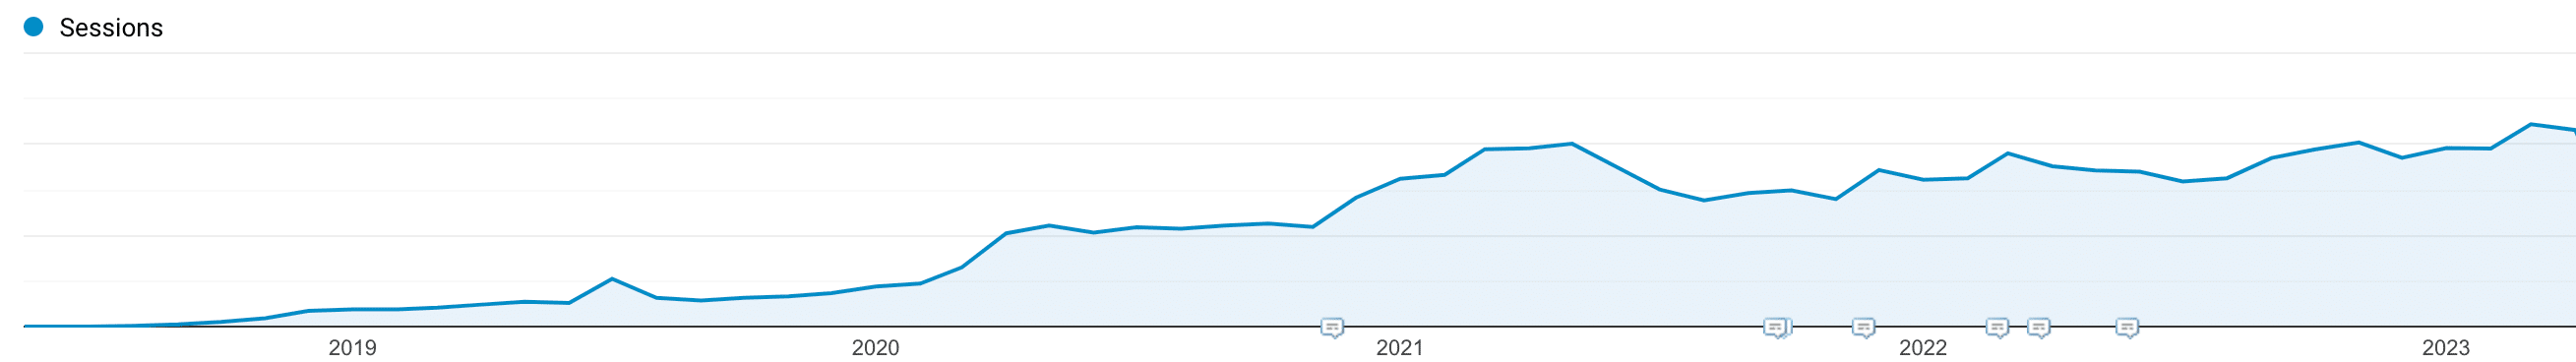 Kinstaのオーガニックトラフィックの成長（2018〜2023年）